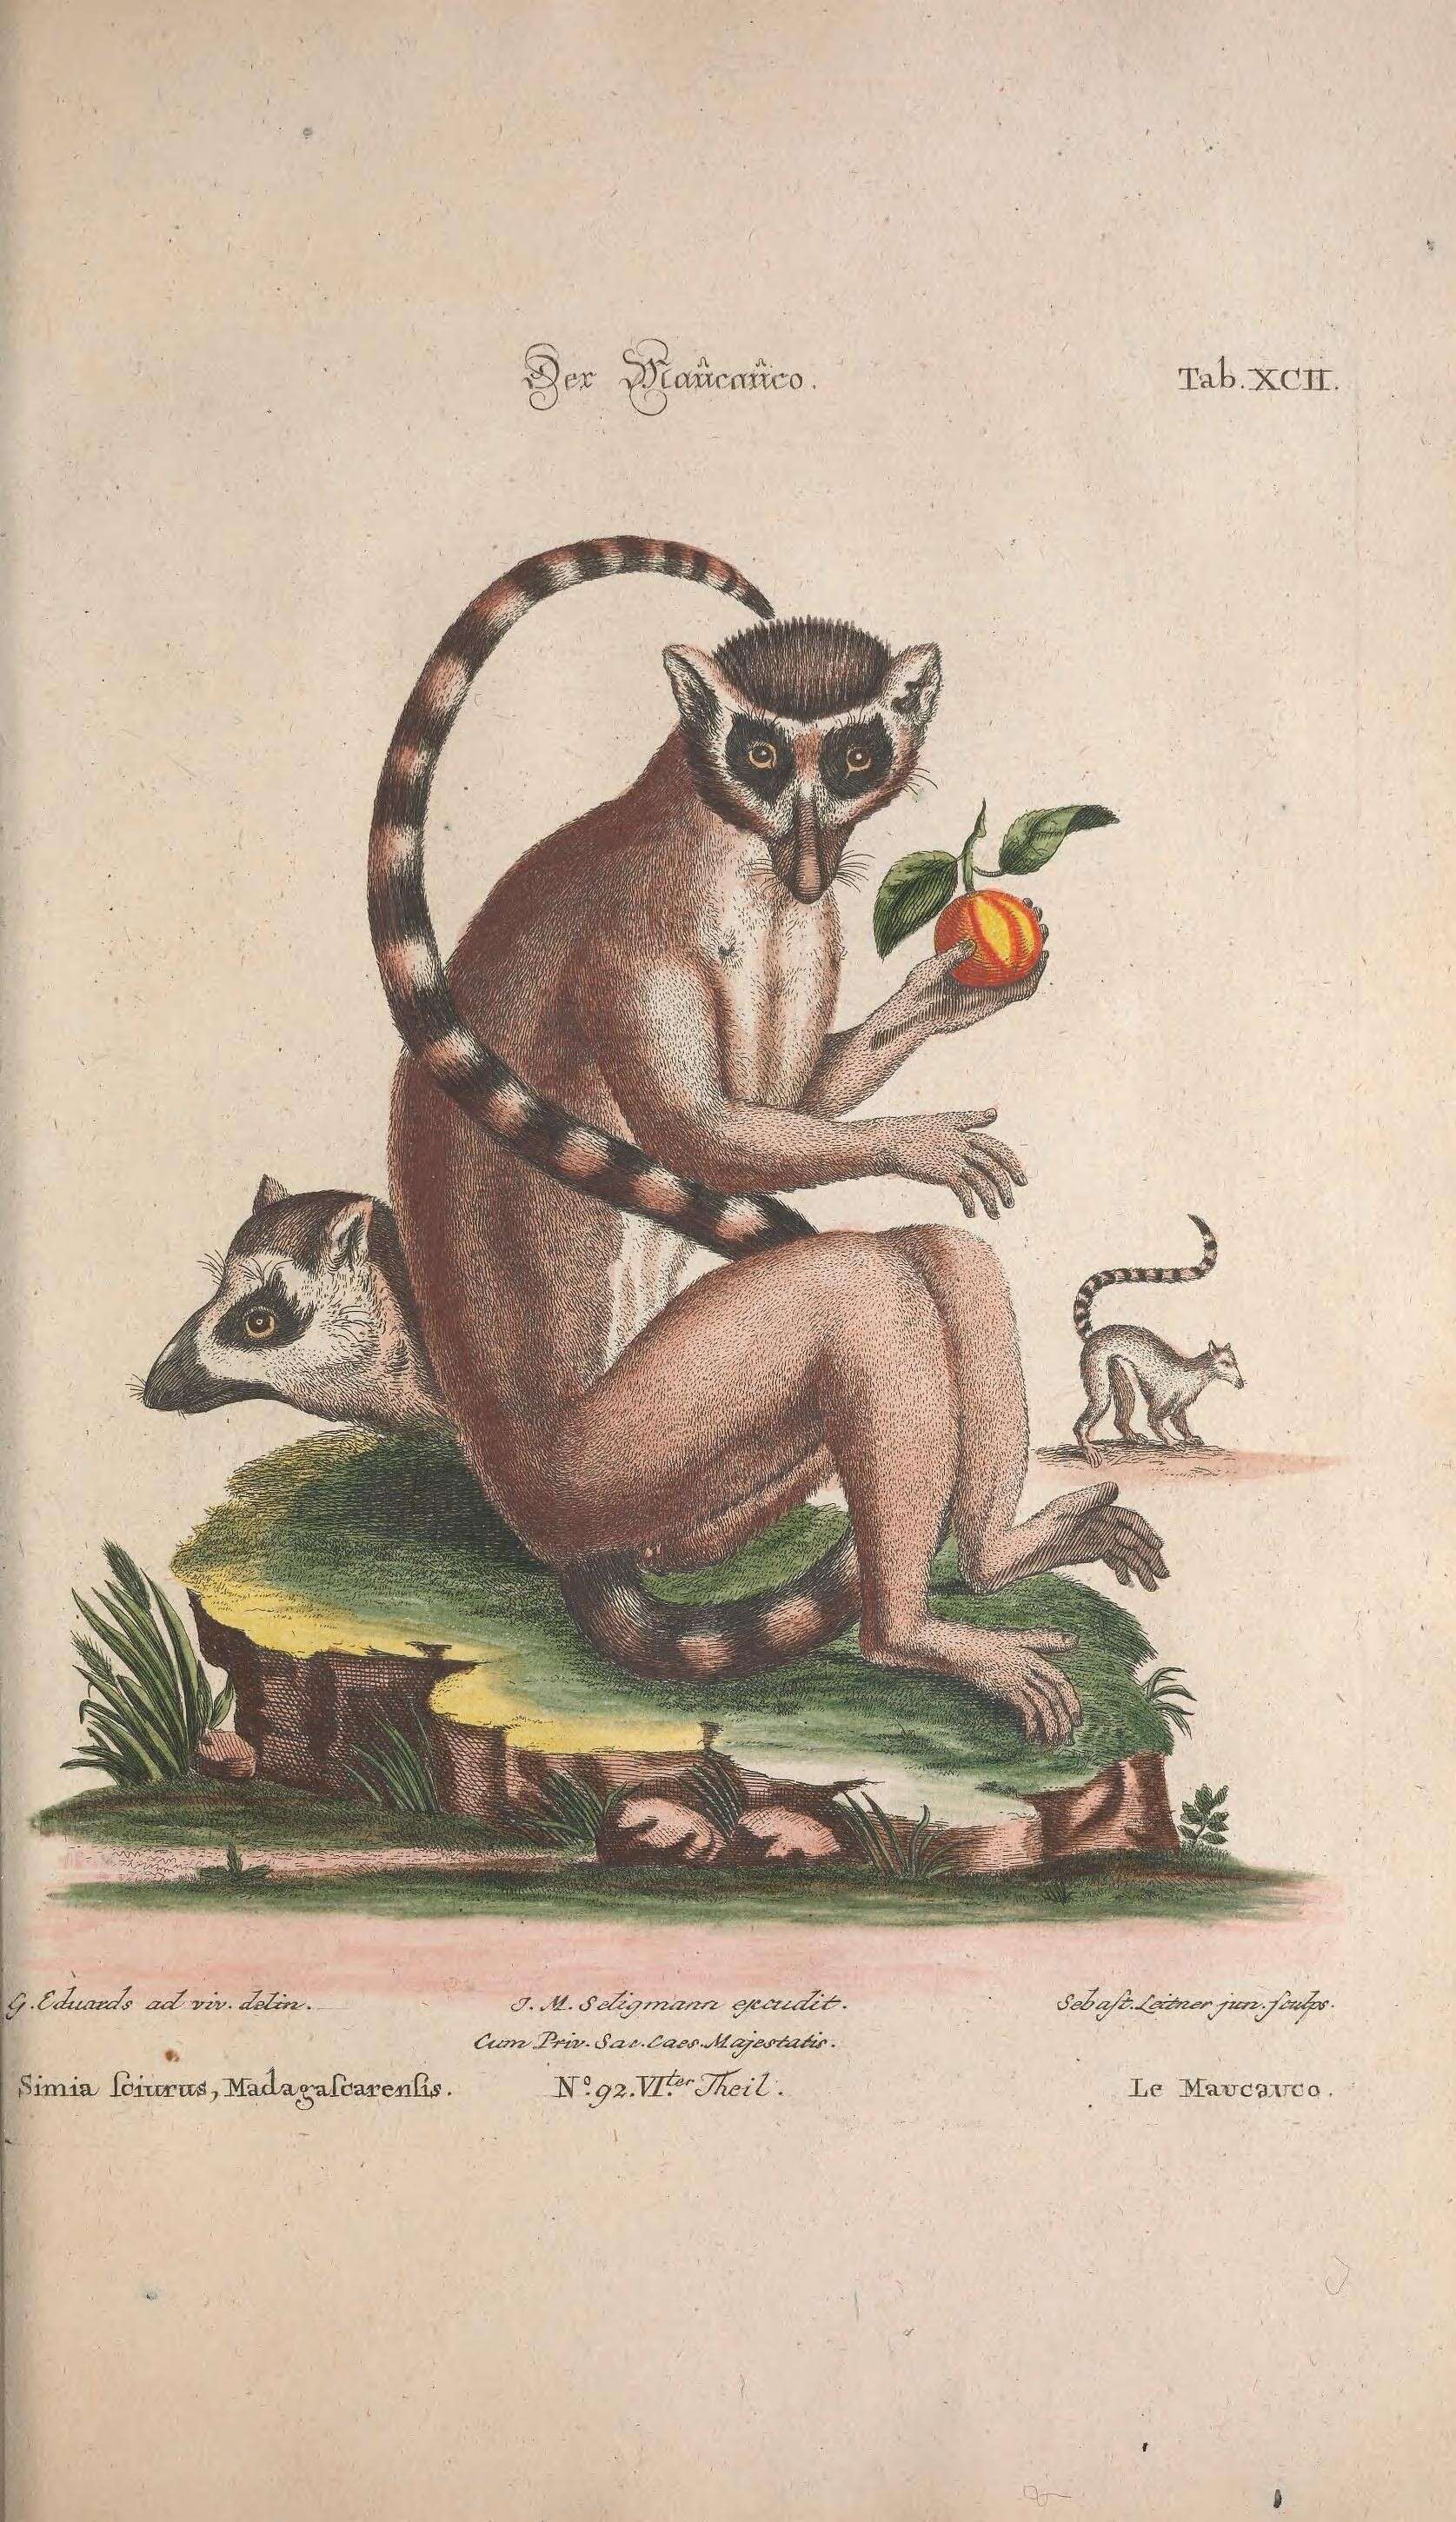 Image de Lemur Linnaeus 1758